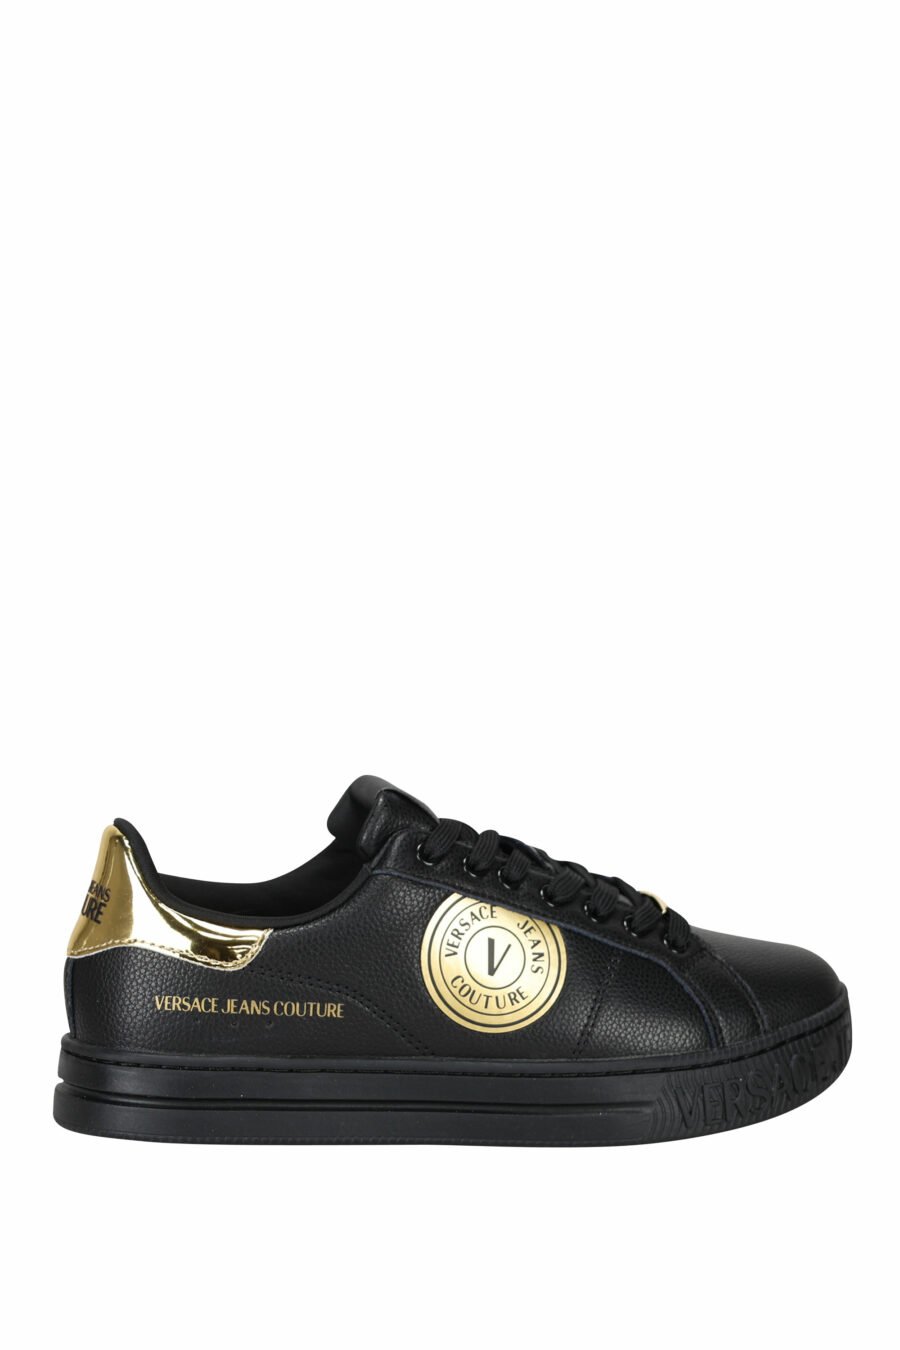 Zapatillas negras de cuero con detalles en dorado y logo circular - 8052019453560